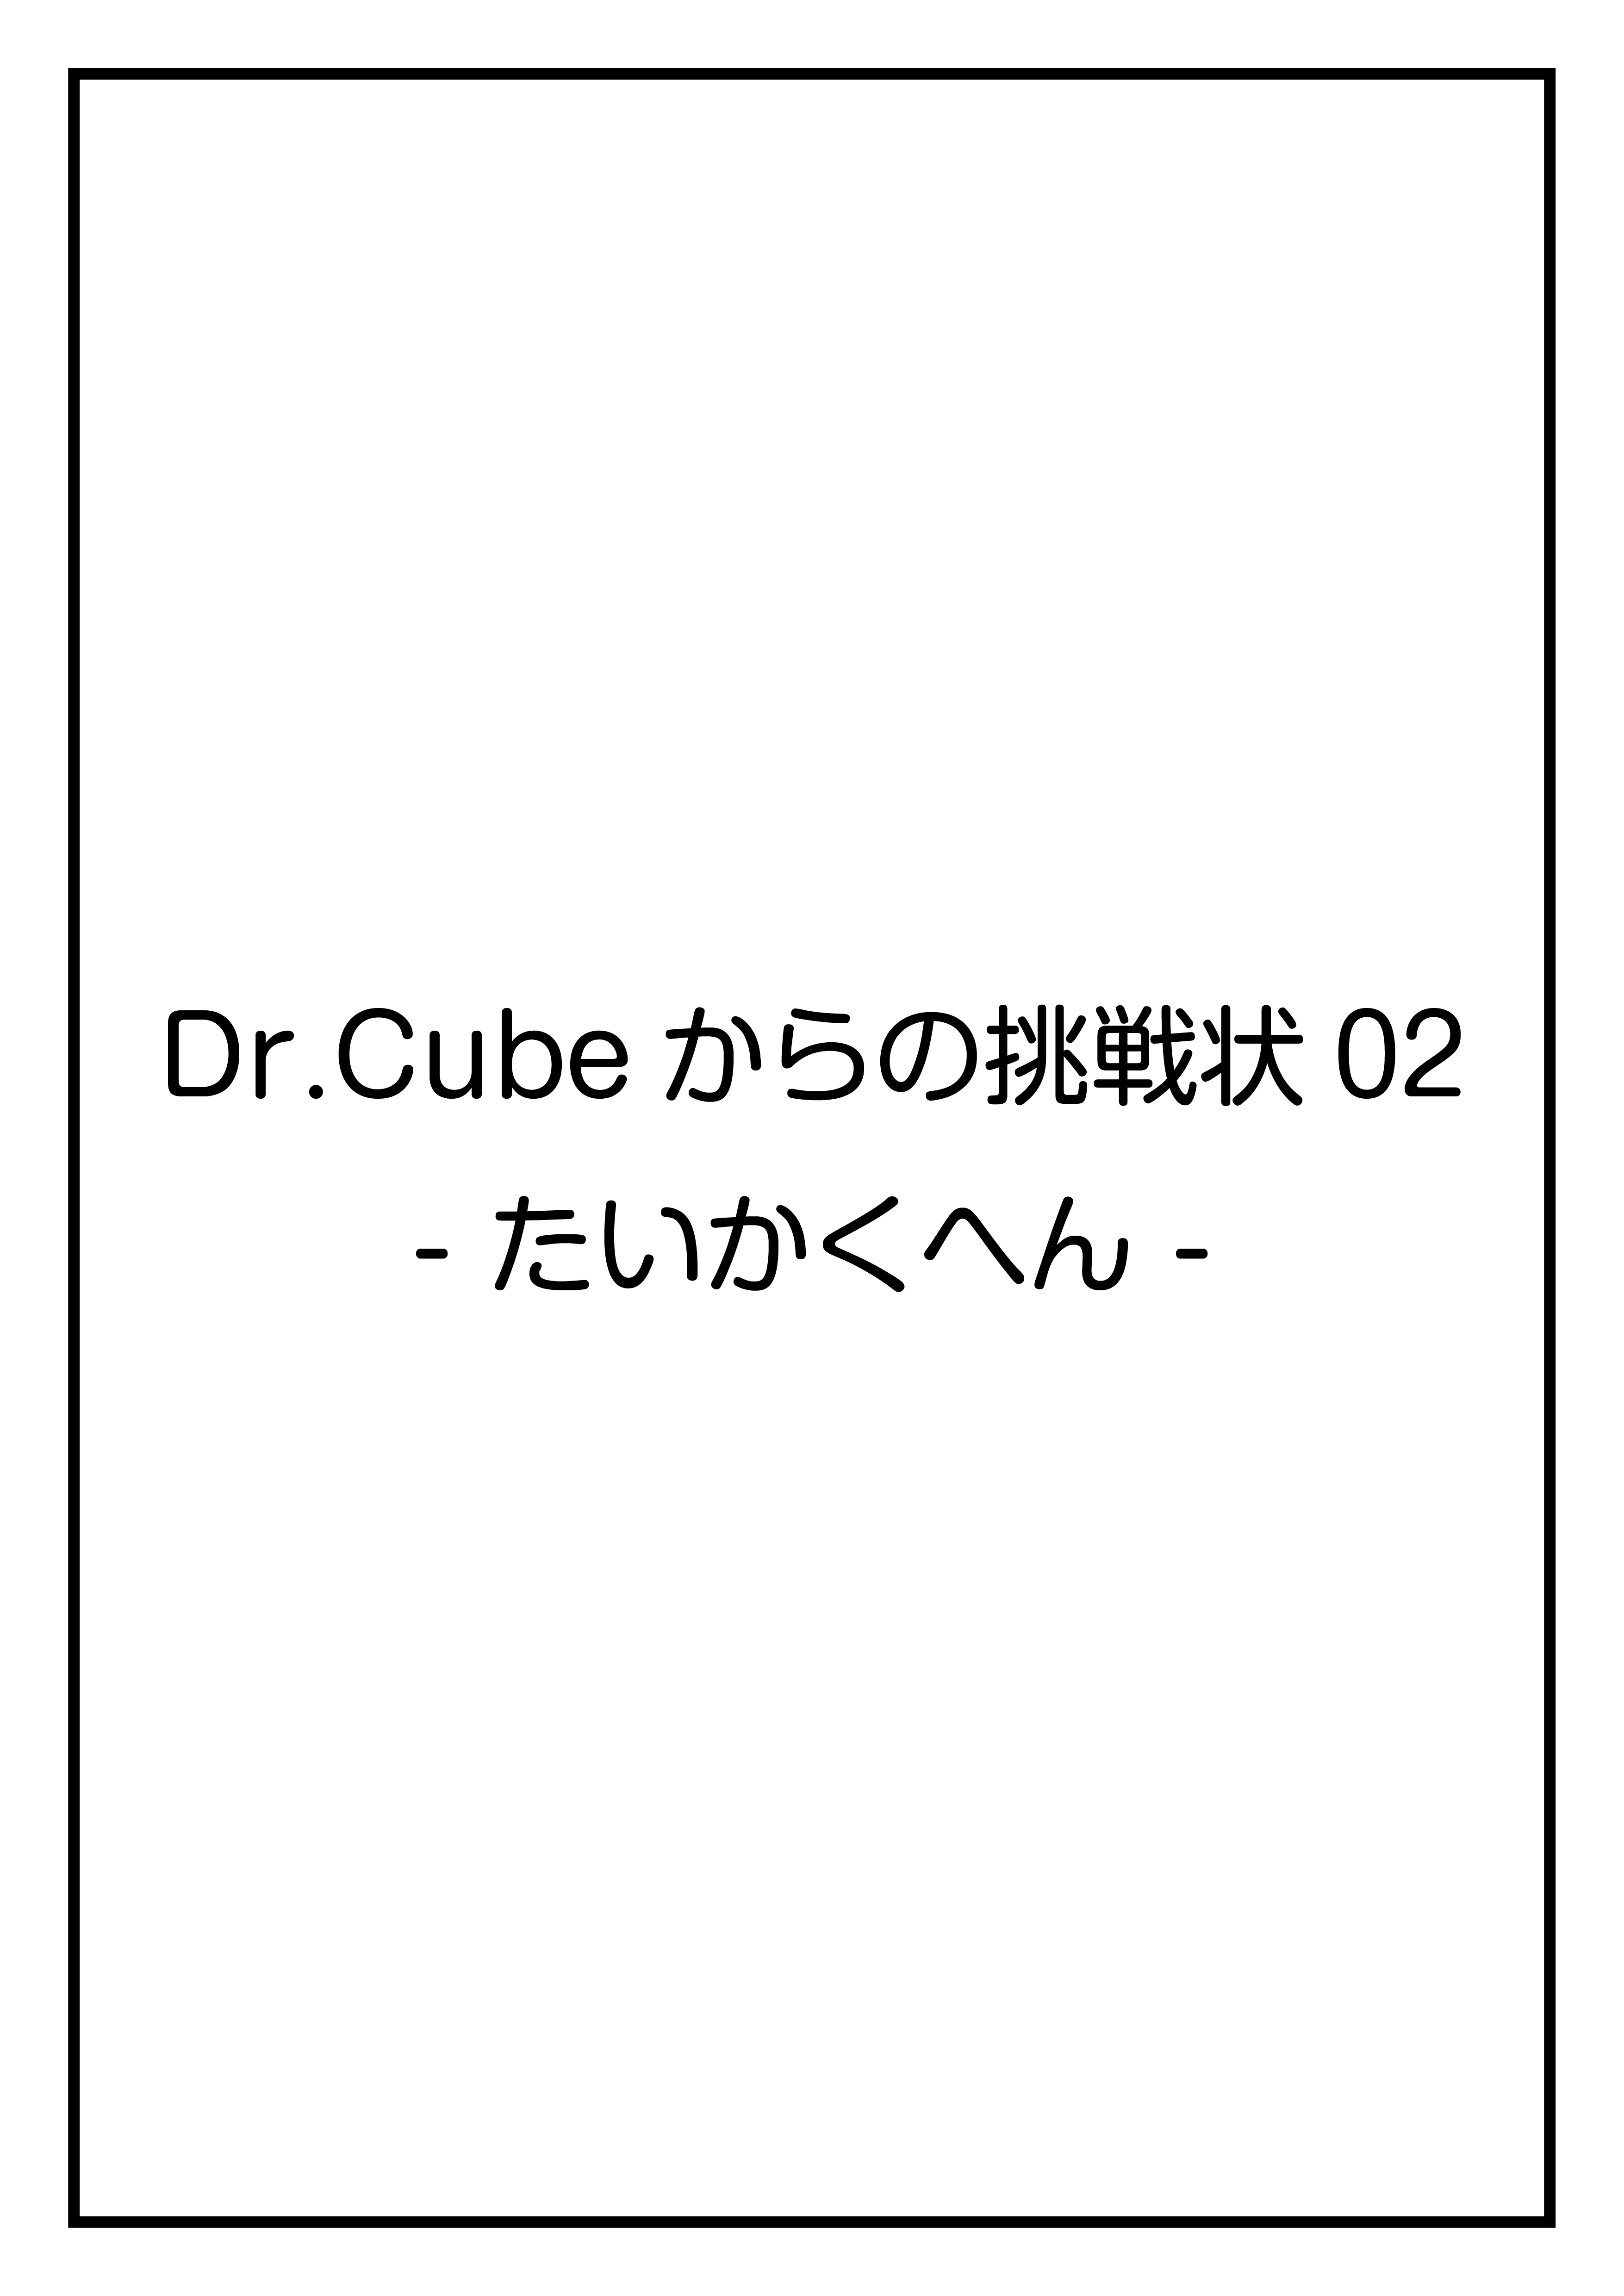 CubeFactory ✕ テクニコテクニカ『Dr.Cubeからの挑戦状02 -たいかくへん-』体験型謎解きゲーム